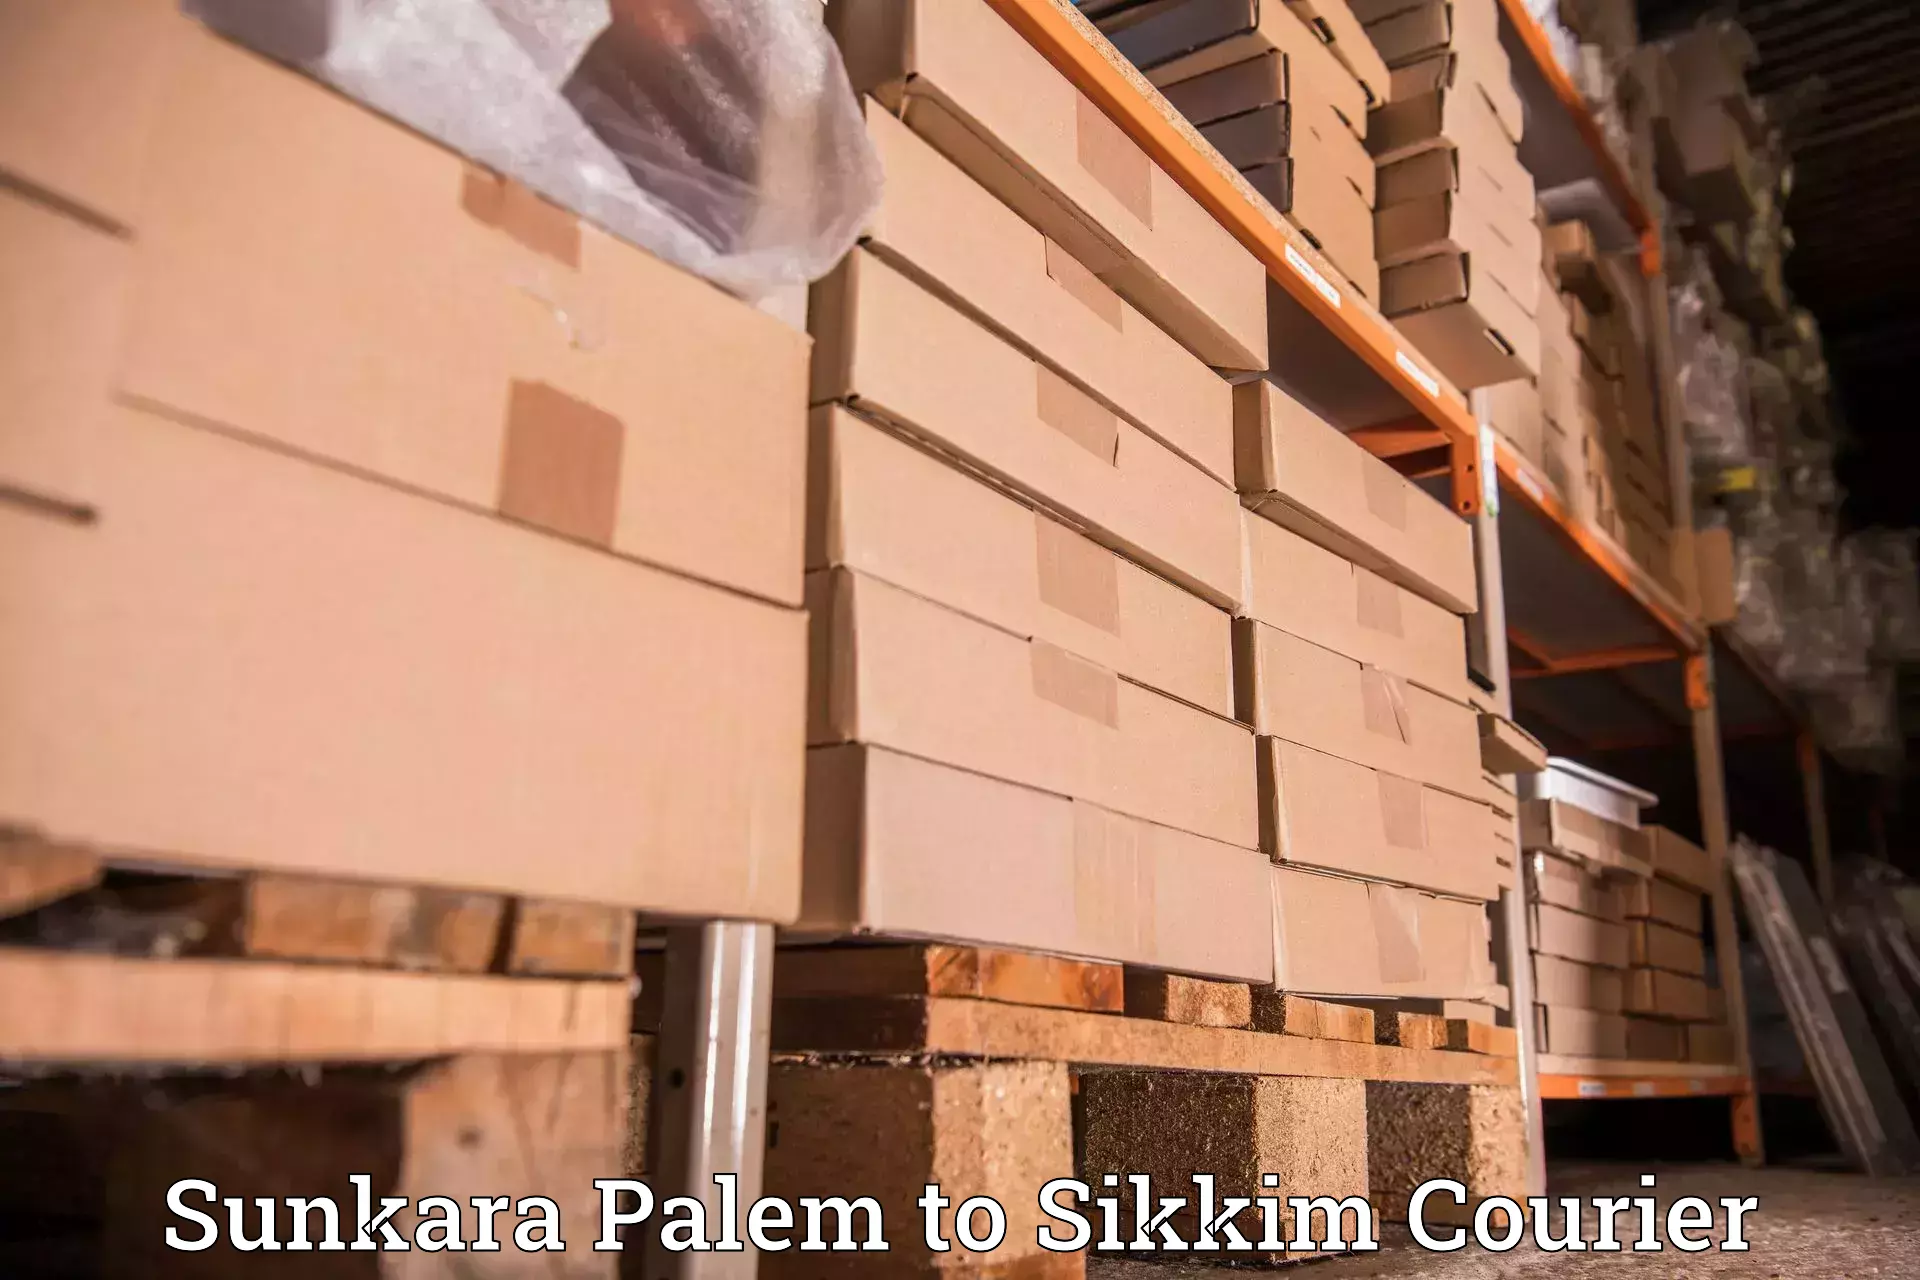 Special handling courier Sunkara Palem to Gangtok